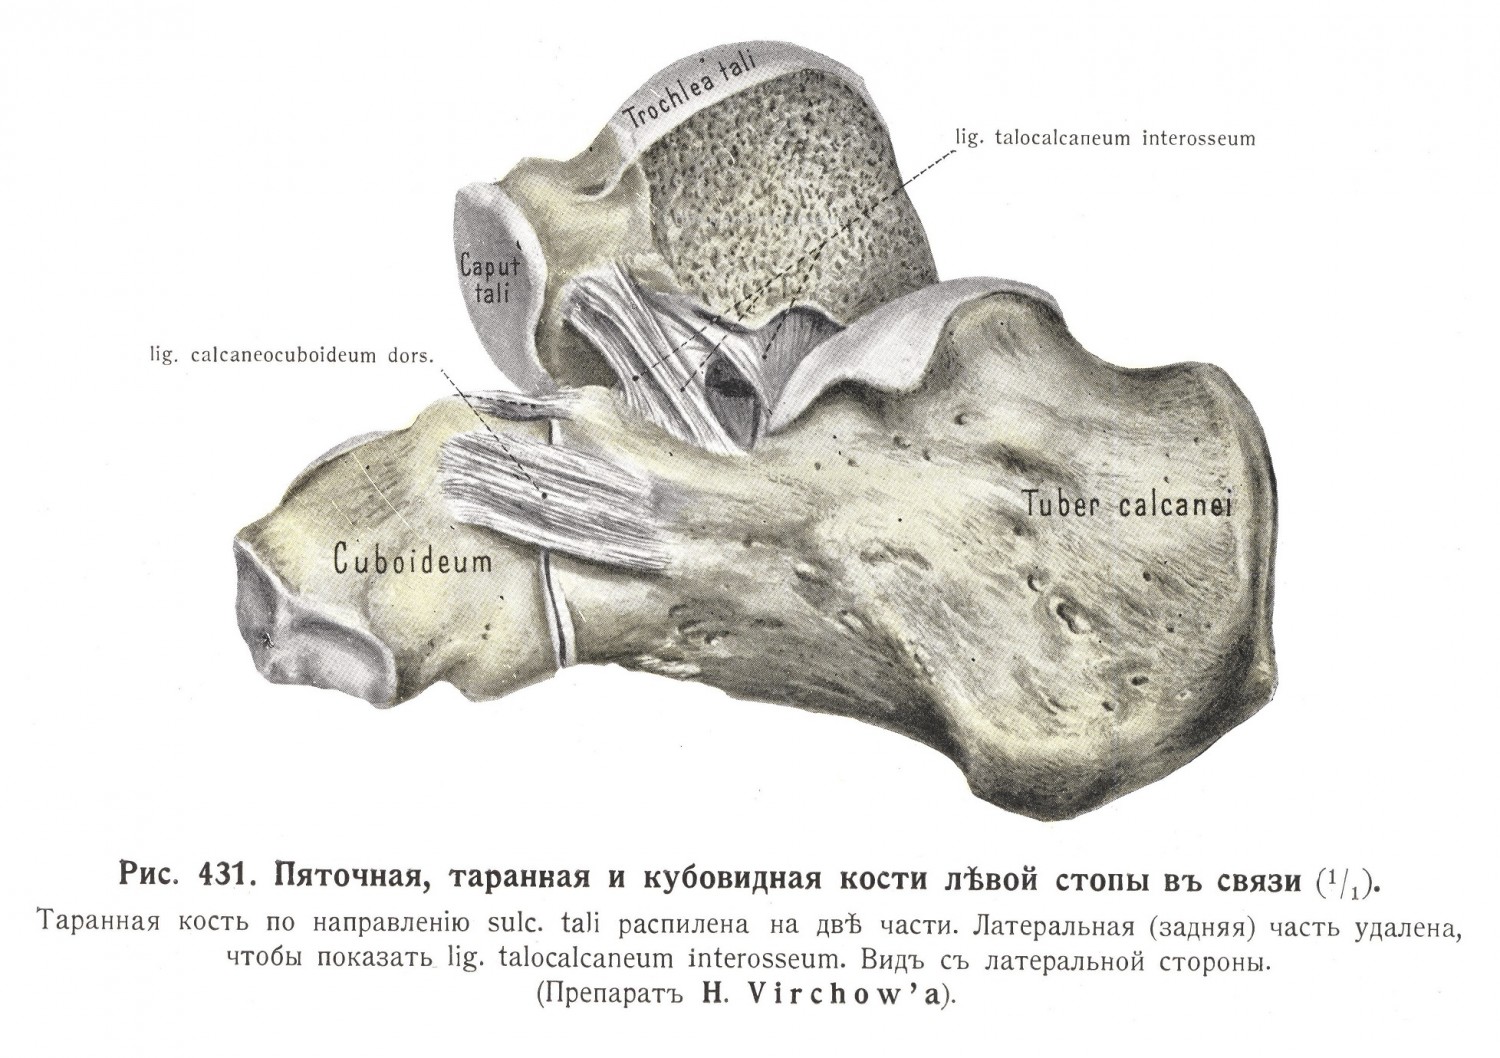 Пяточная, таранная и кубовидная кости левой стопы